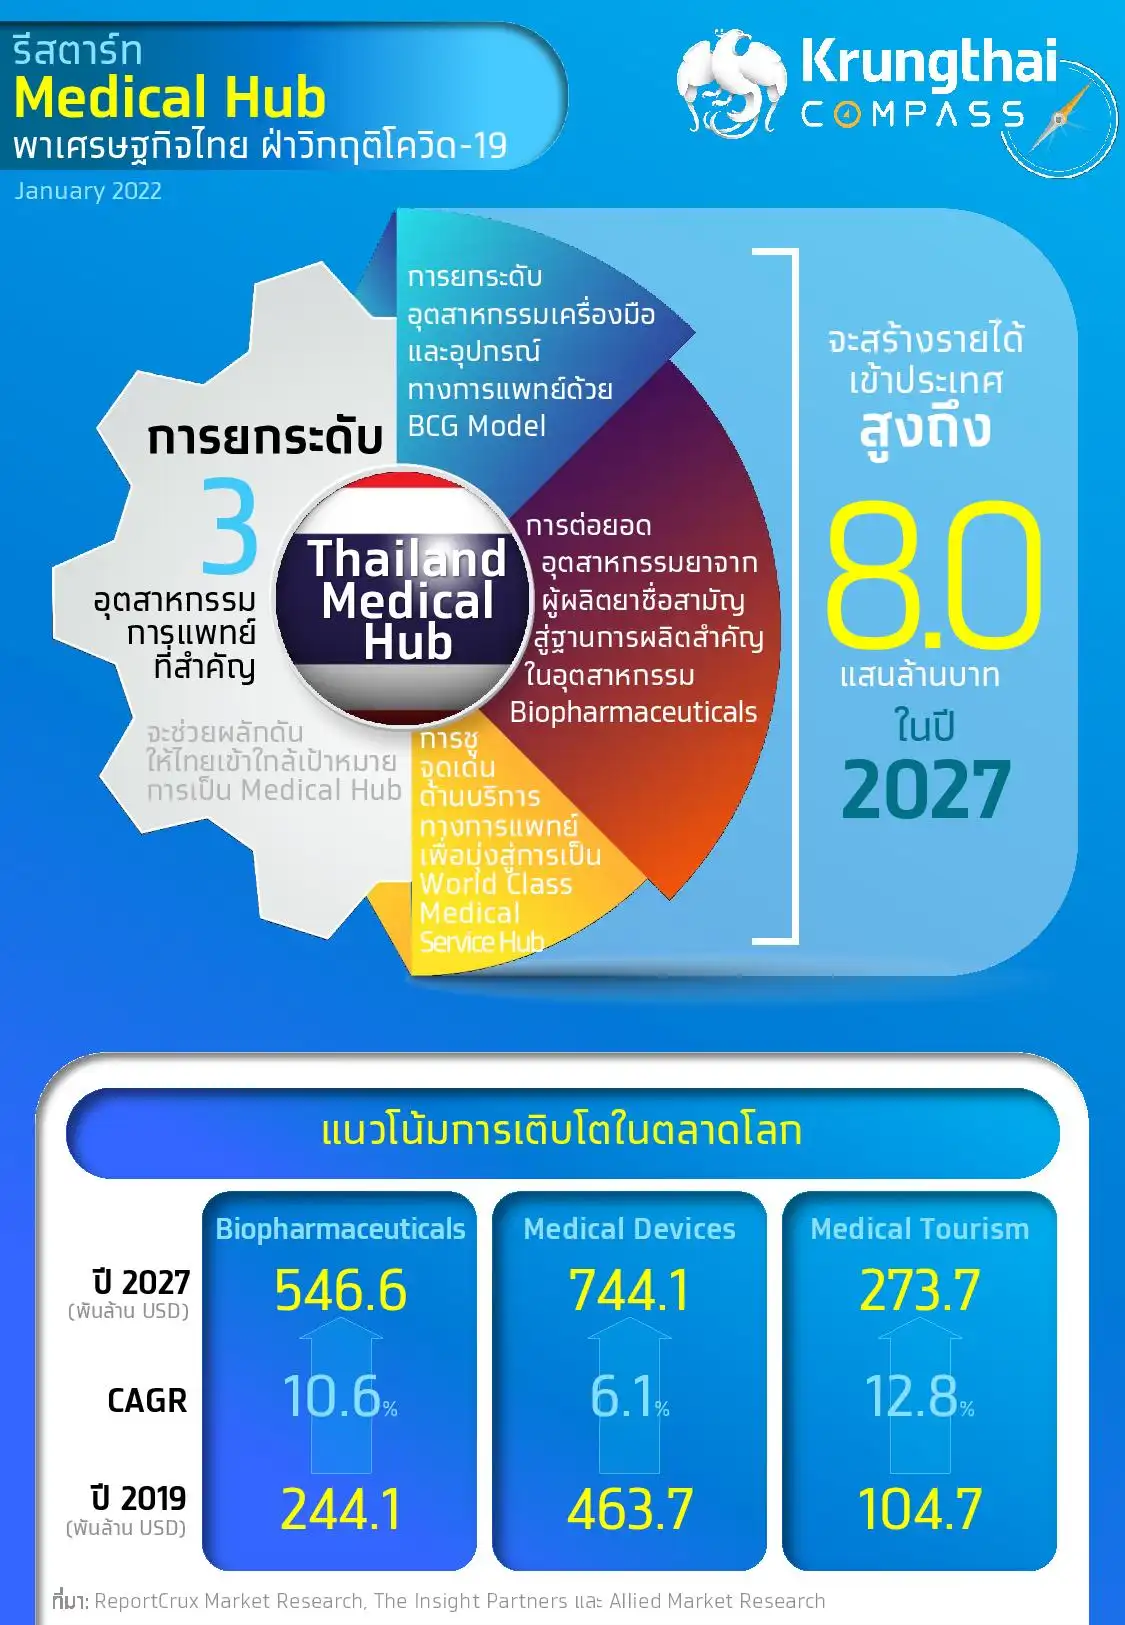 รีสตาร์ท Medical Hub พาเศรษฐกิจไทย ฝ่าวิกฤติโควิด-19 - Krungthai Compass HealthServ